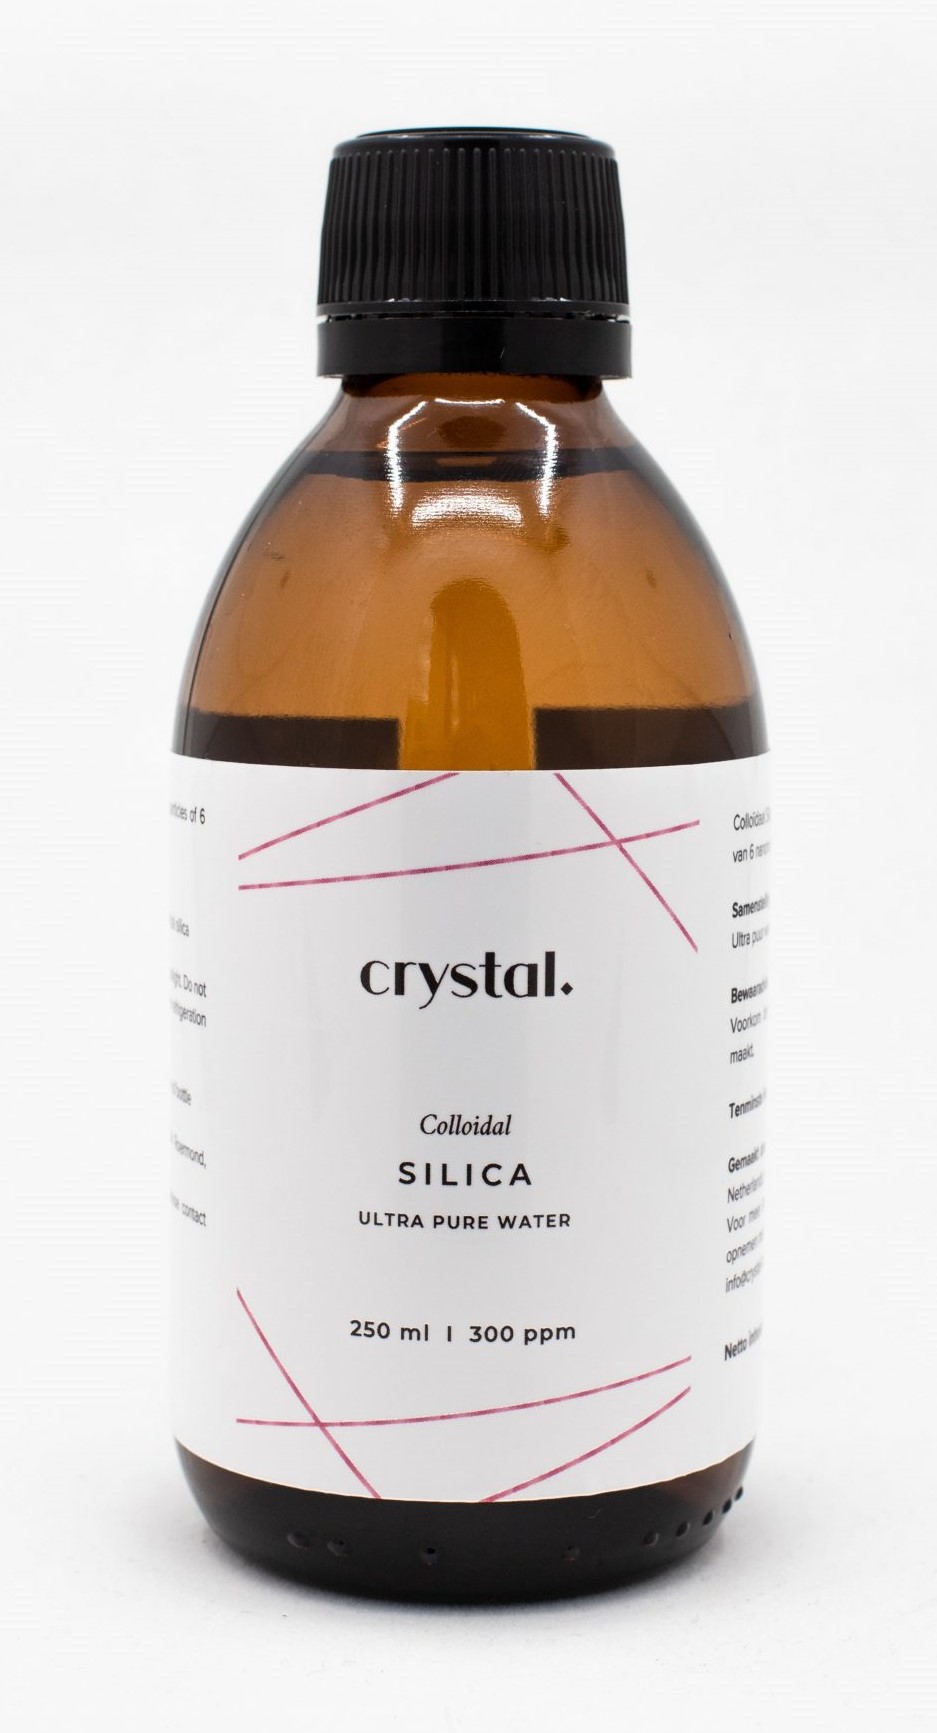 Crystal Colloidaal Silica